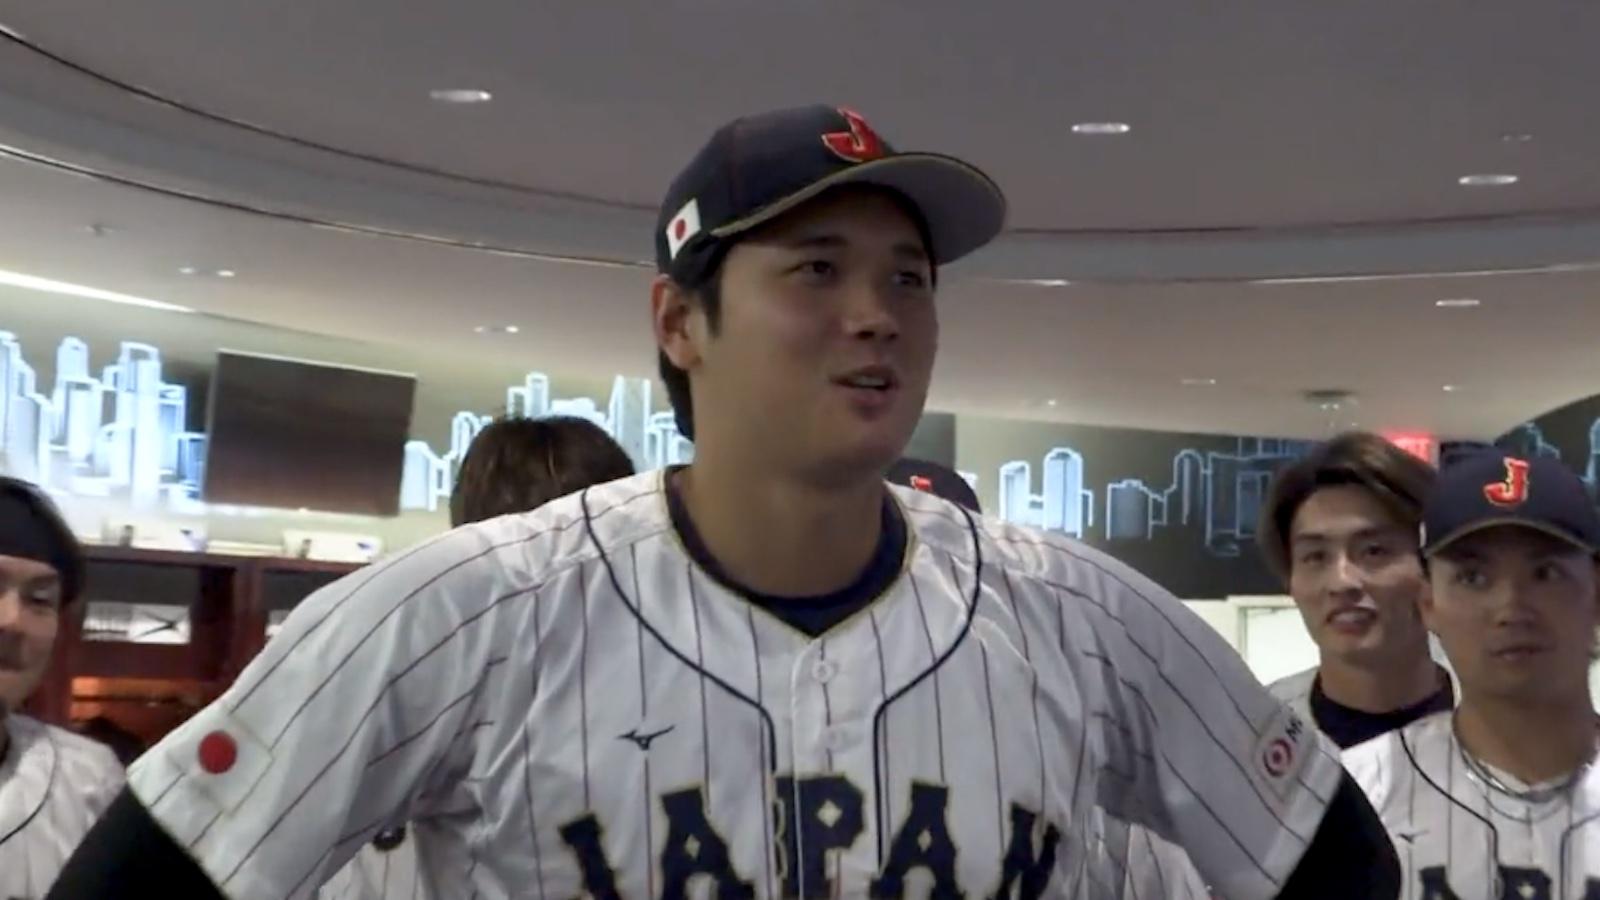 Japanese Propaganda Helped Shohei Ohtani Make Baseball History